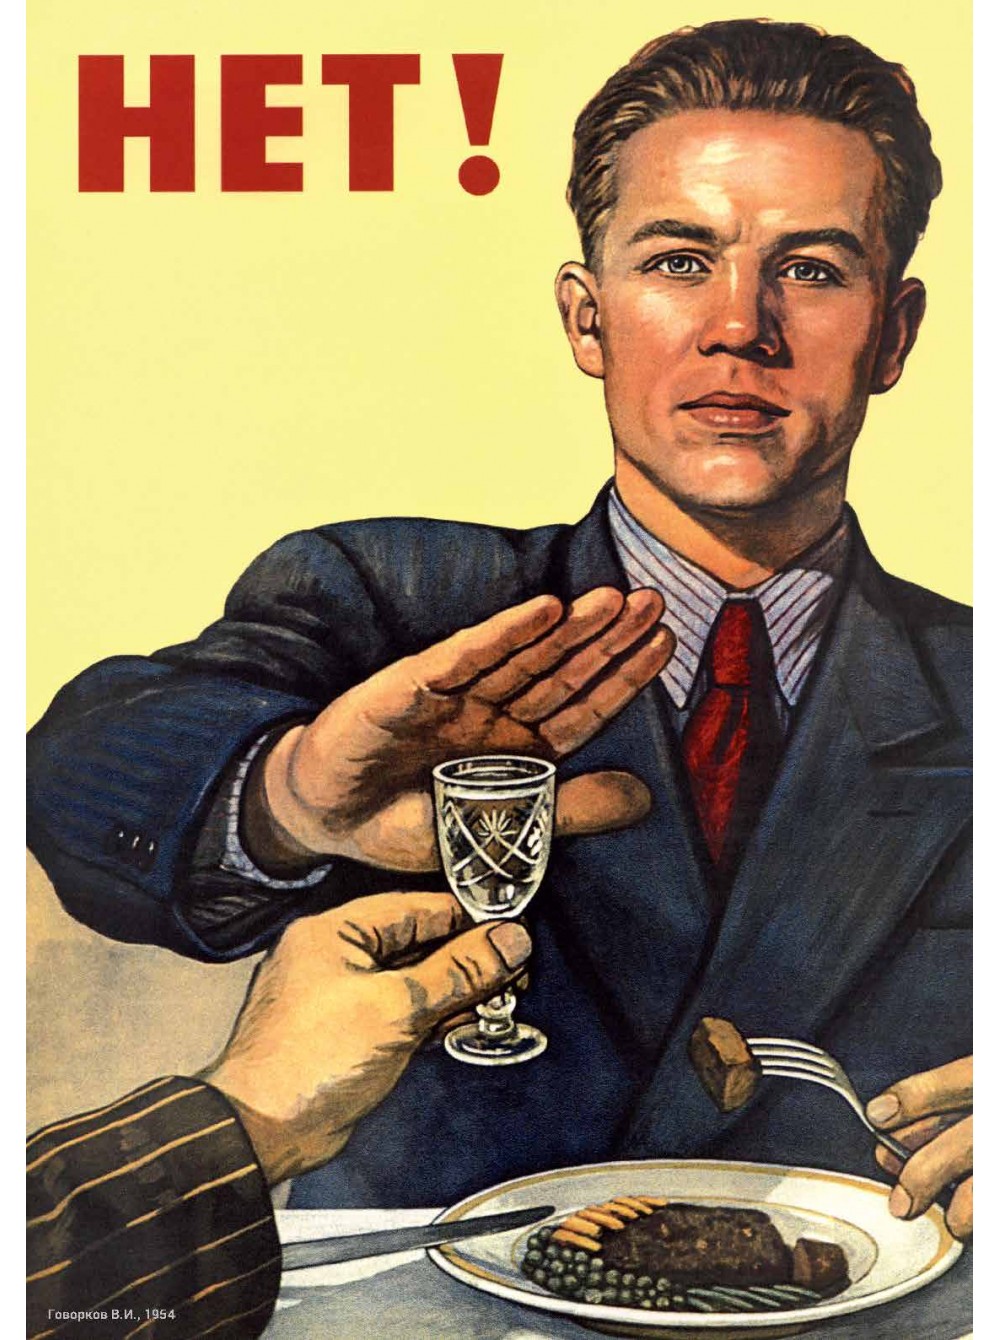 советский плакат